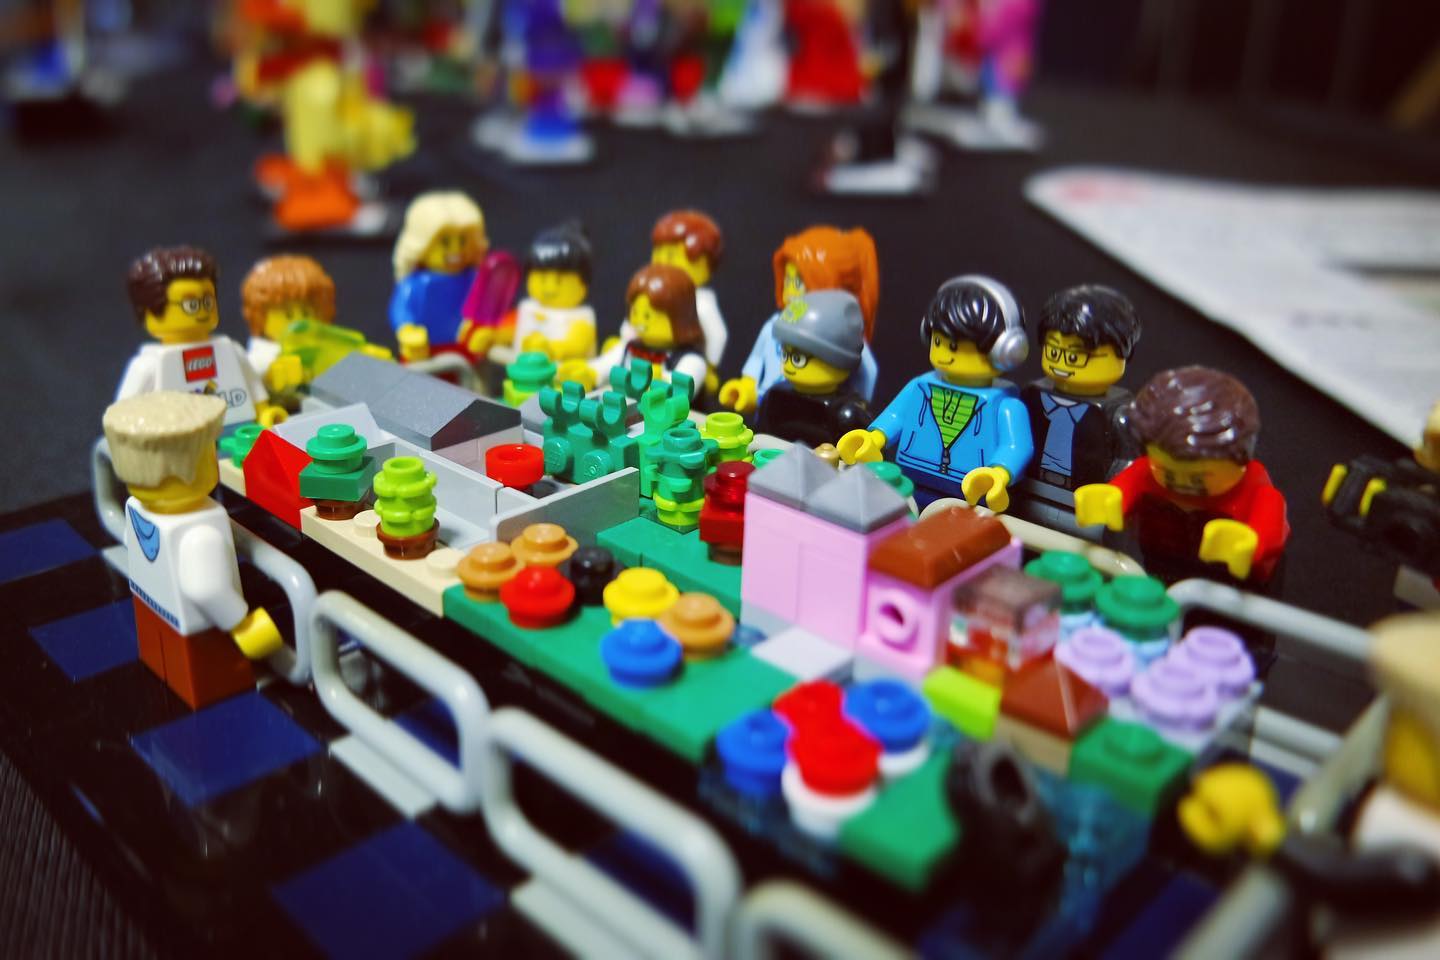 Ooitgebouwd in miniatuur. Model van de volledige opstelling op schaal met de minifiguren. #lego #microbuilding #microbuild #legoshow #hetlandvanooit #moc #legomoc